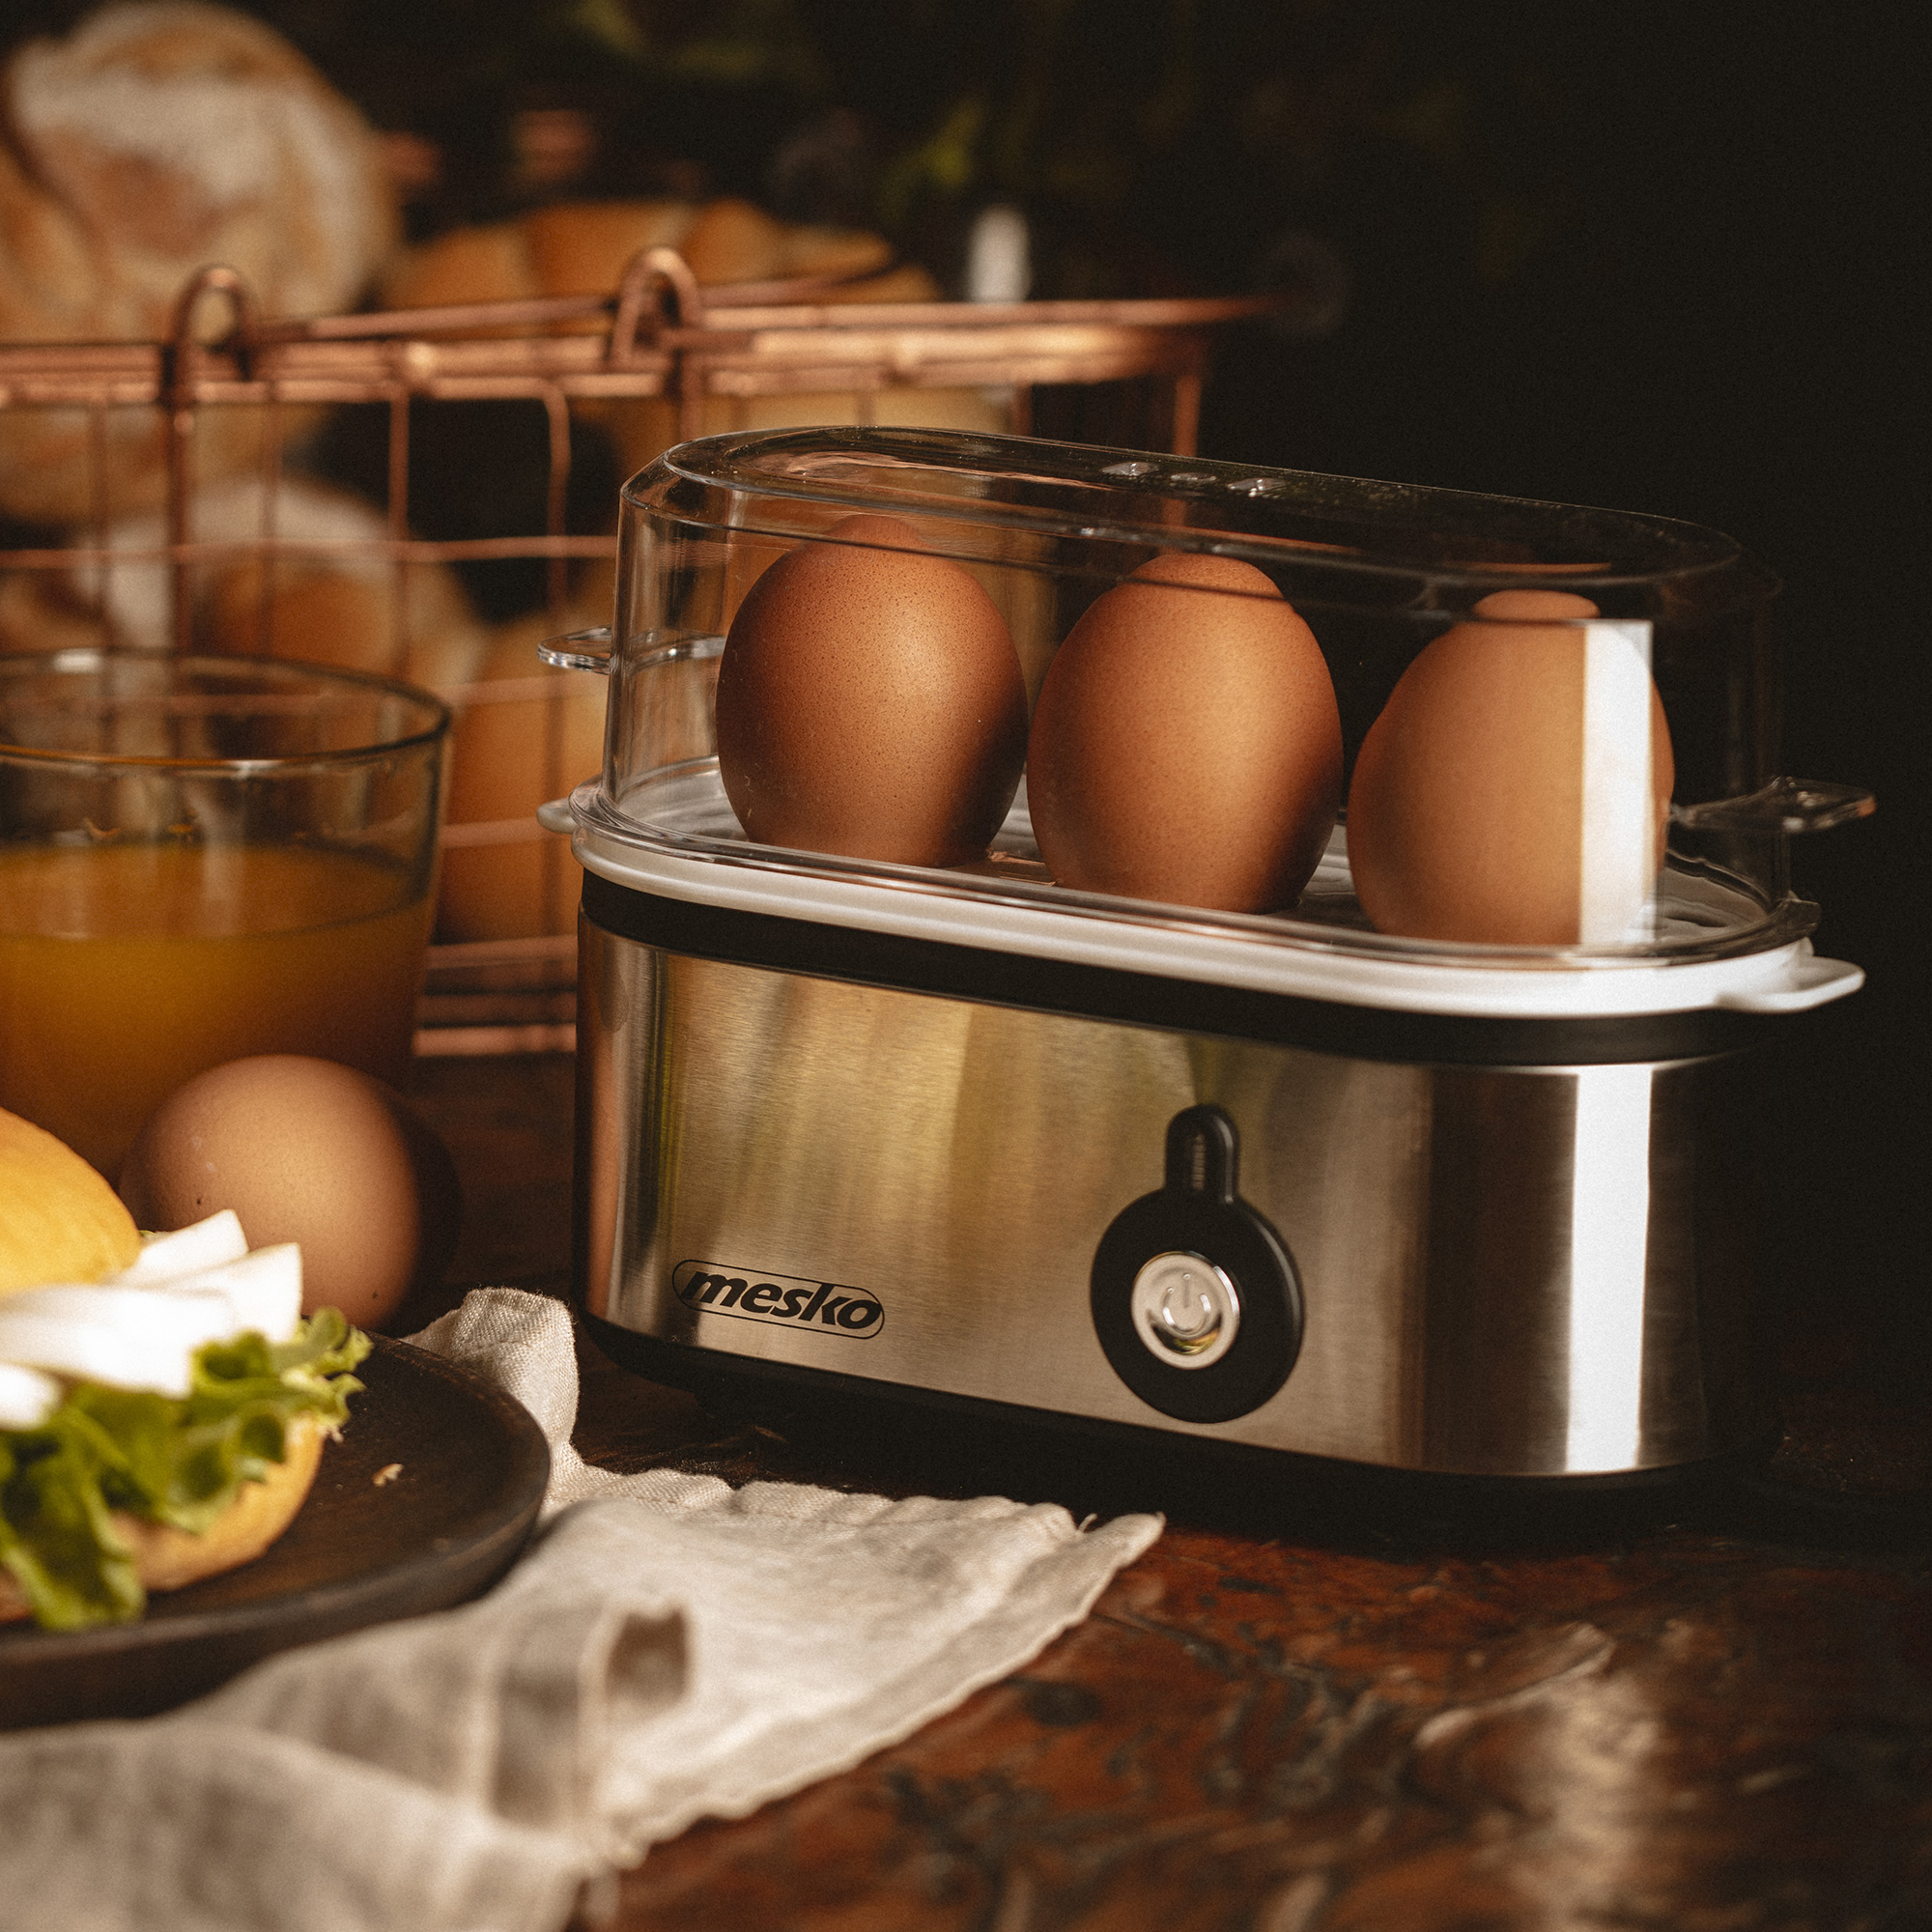 MESKO MS-4485 Cuece Huevos Eléctrico para 3 Huevos, Acero Inoxidable, Protección por Sobre Calentamiento, 350W, Libre de BPA